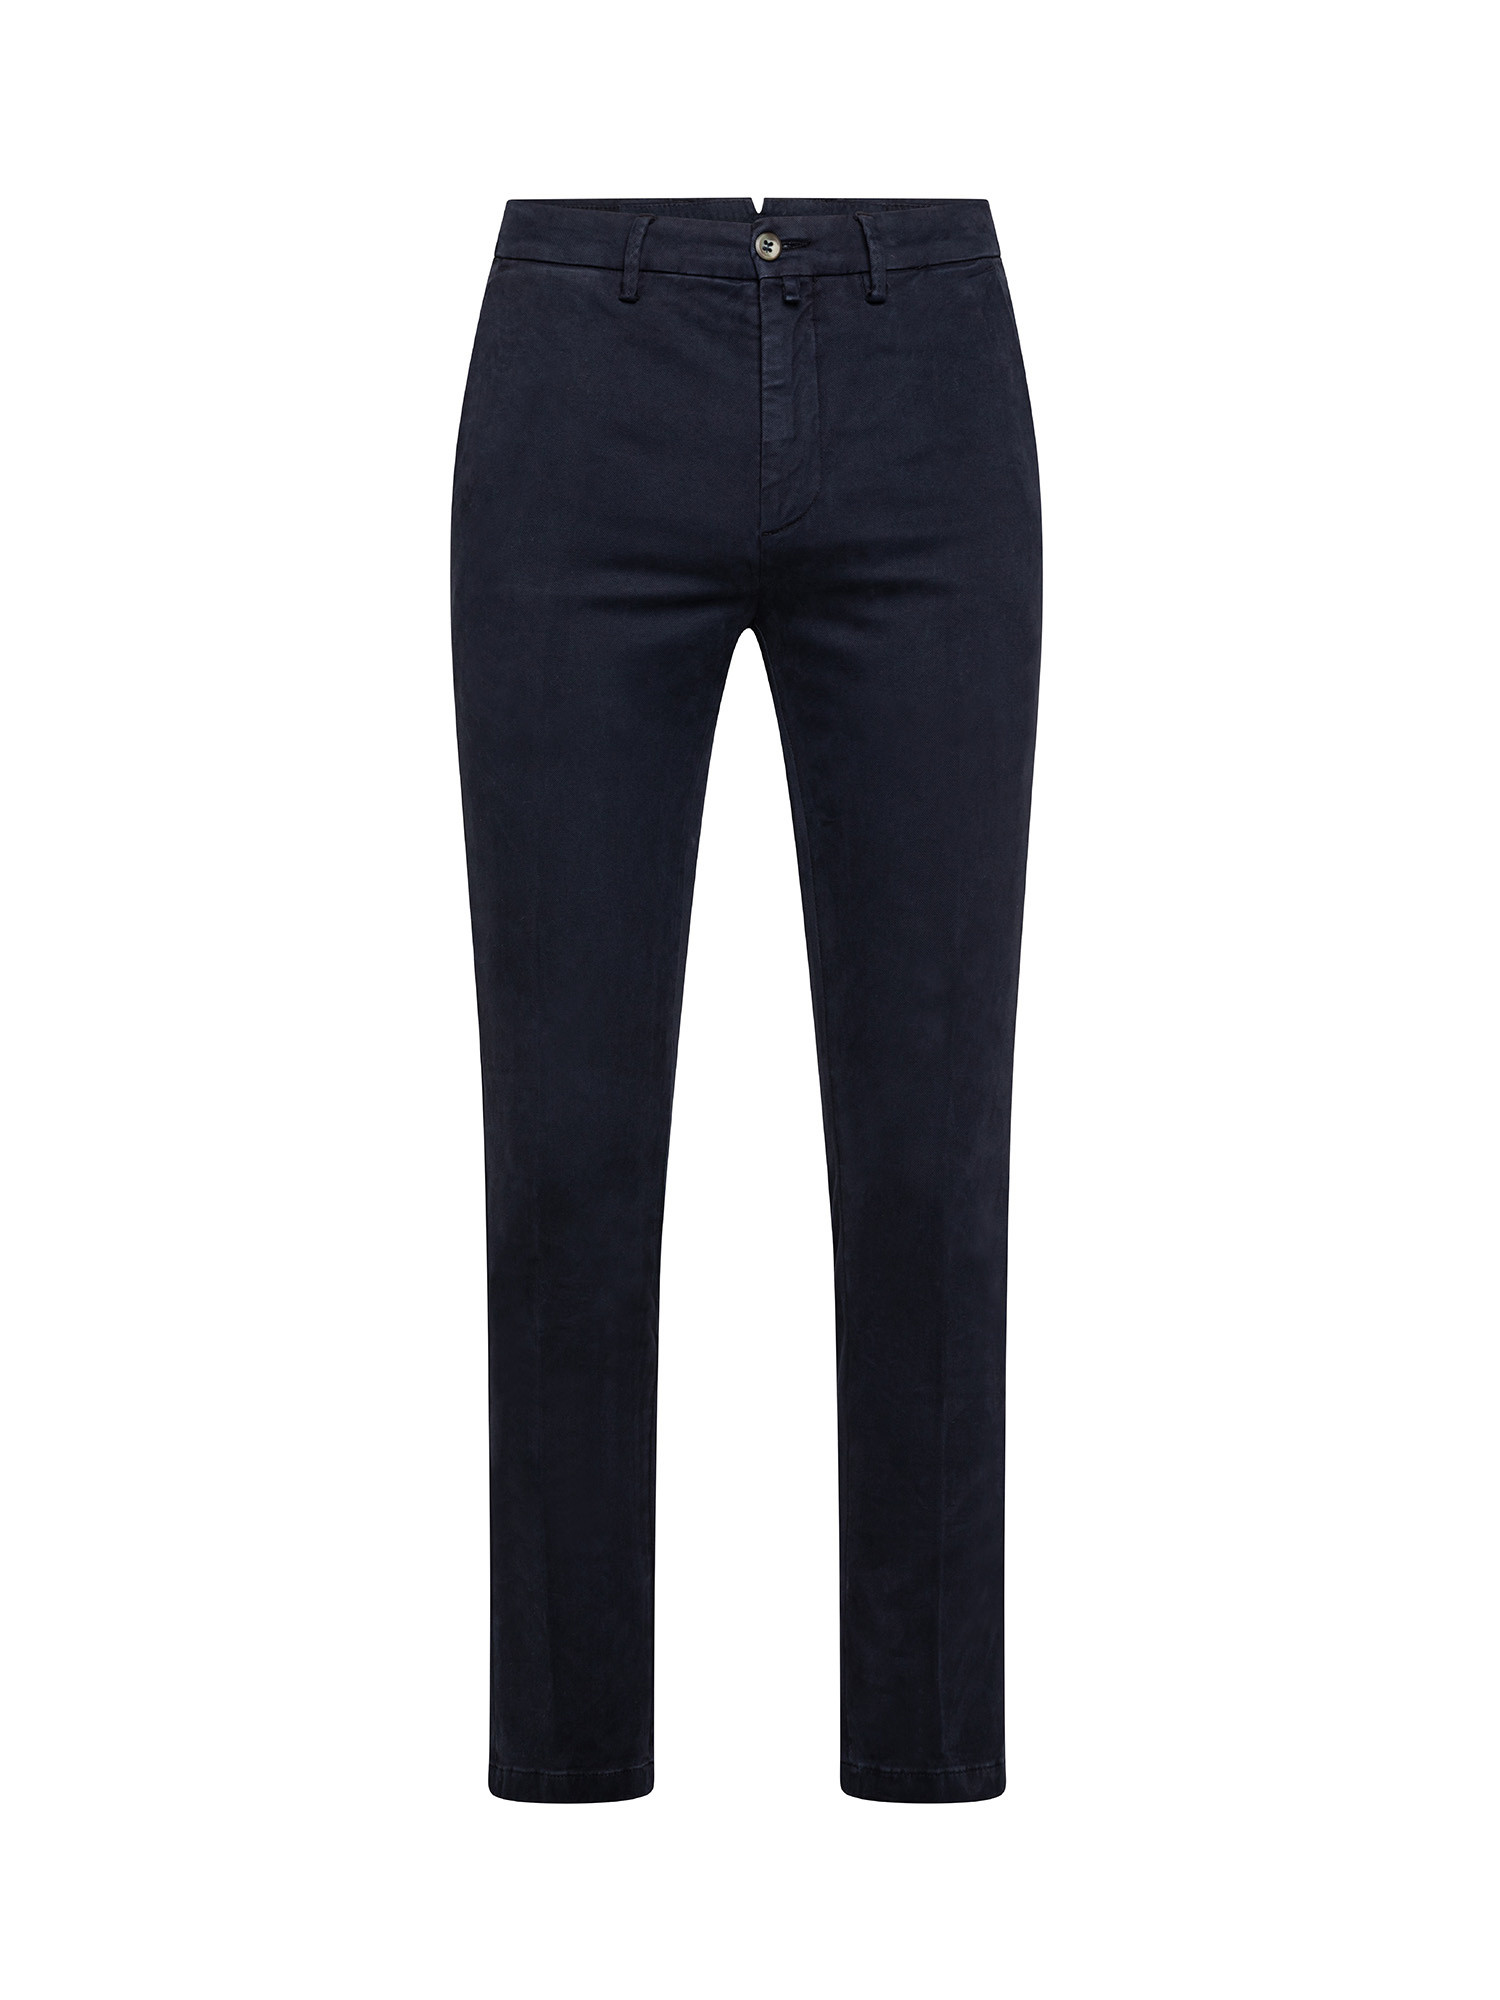 Pantaloni chino, Blu, large image number 0